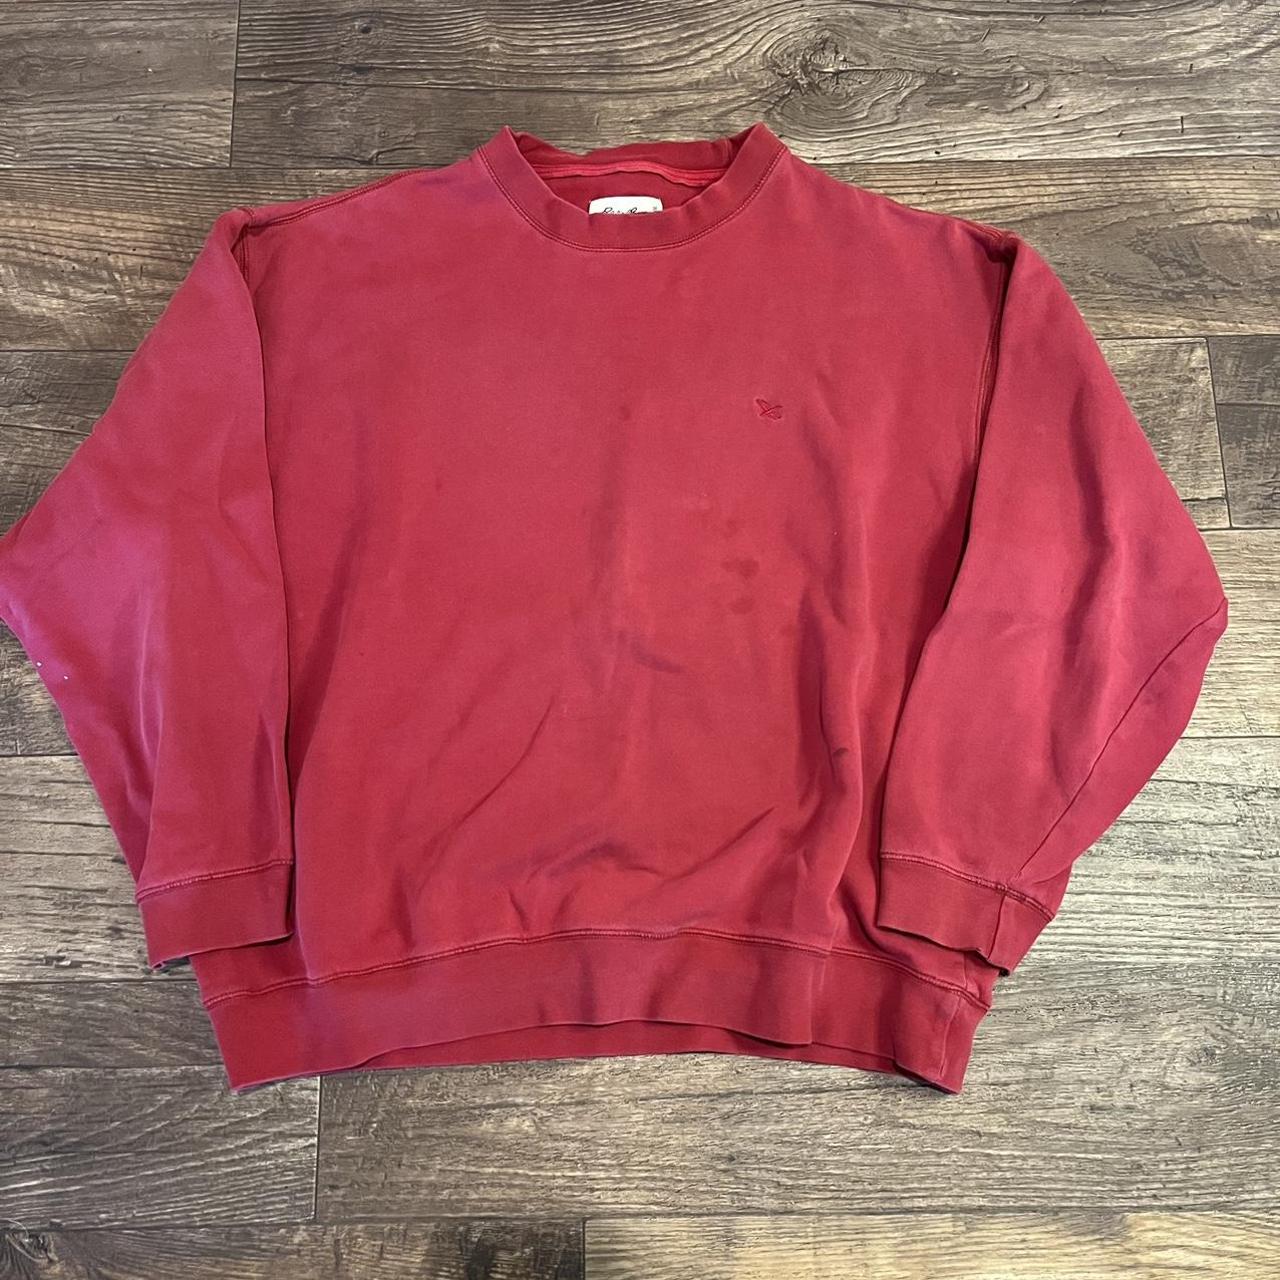 Super Clean Vintage Eddie Bauer Red Sweatshirt Size... - Depop